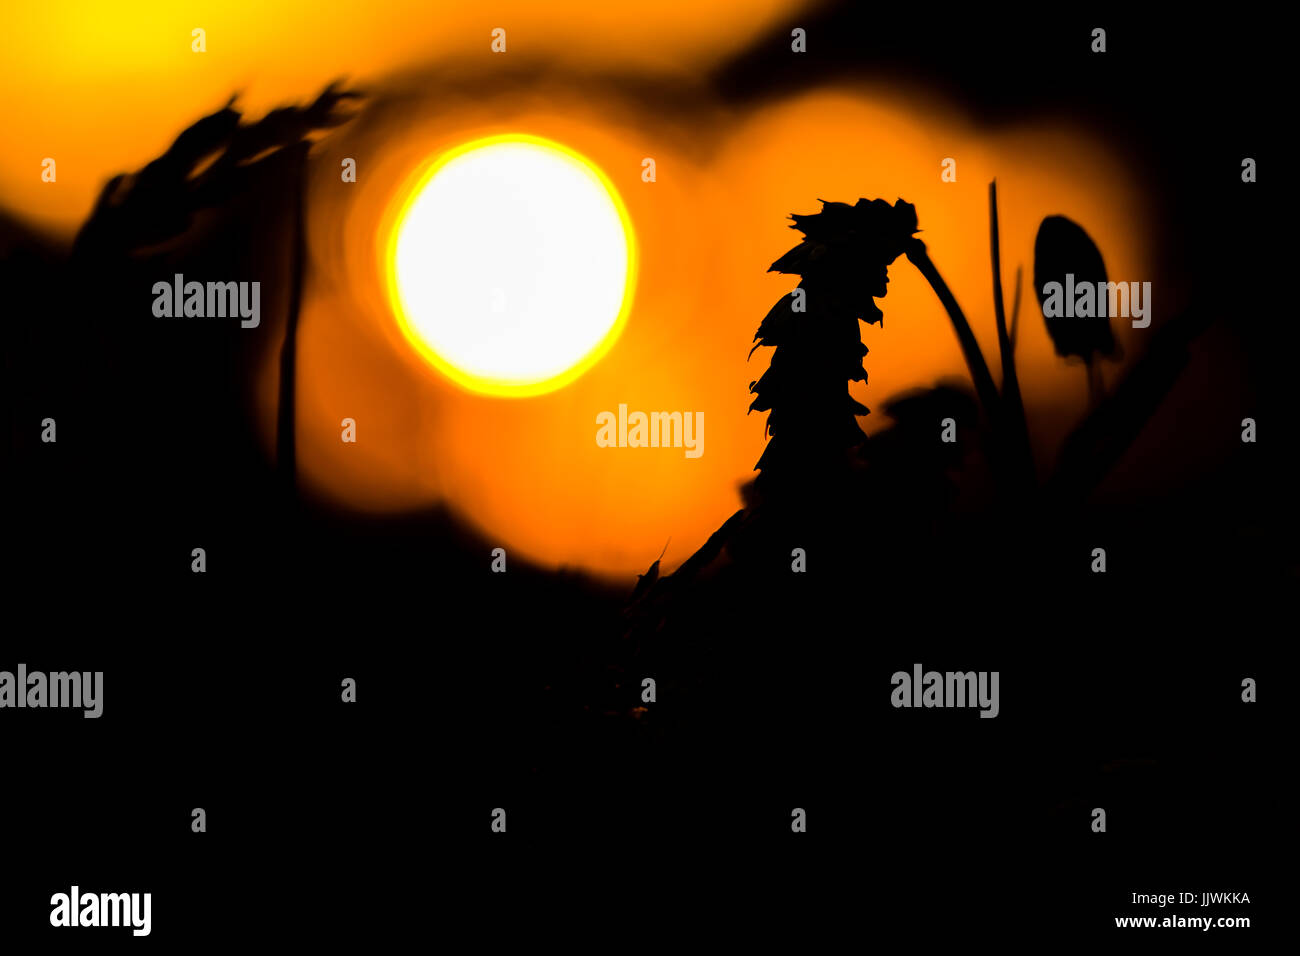 La silhouette di ers di grano al tramonto. Arancione della luce del sole, il sole all'orizzonte. Foto Stock